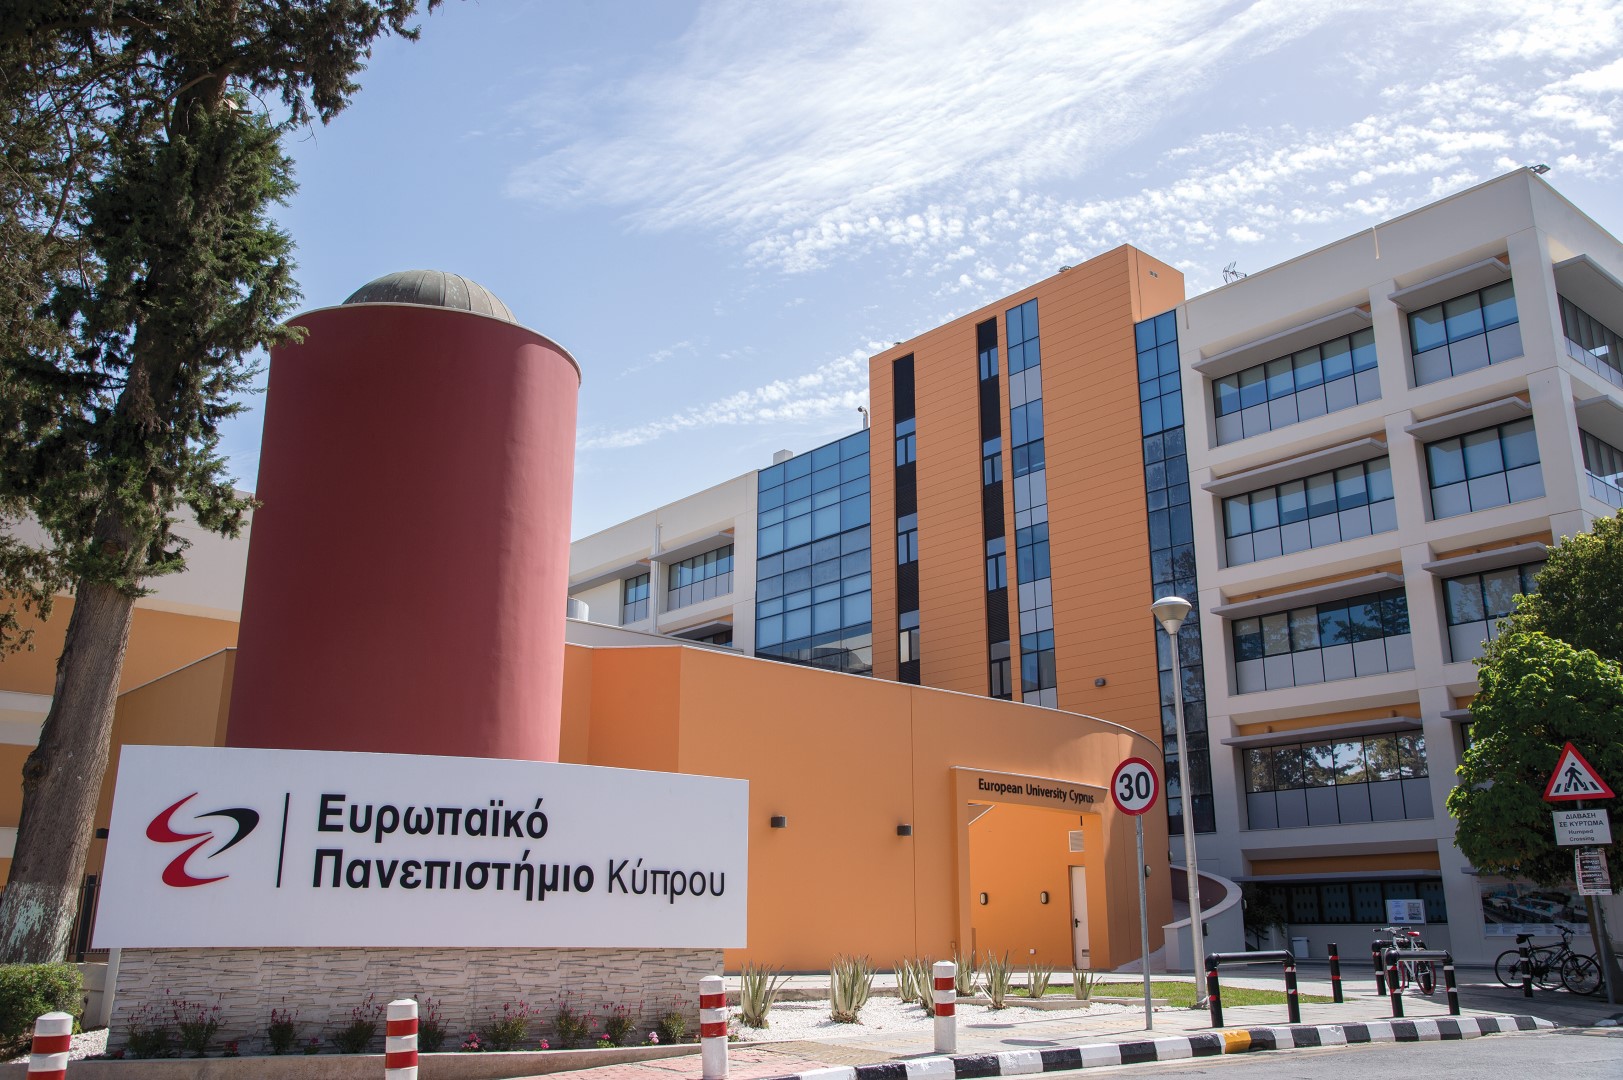 Διαδικτυακή Επιστημονική Διάλεξη  «Άσκηση και Μεταβολικό Σύνδρομο » από το Ευρωπαϊκό Πανεπιστήμιο Κύπρου